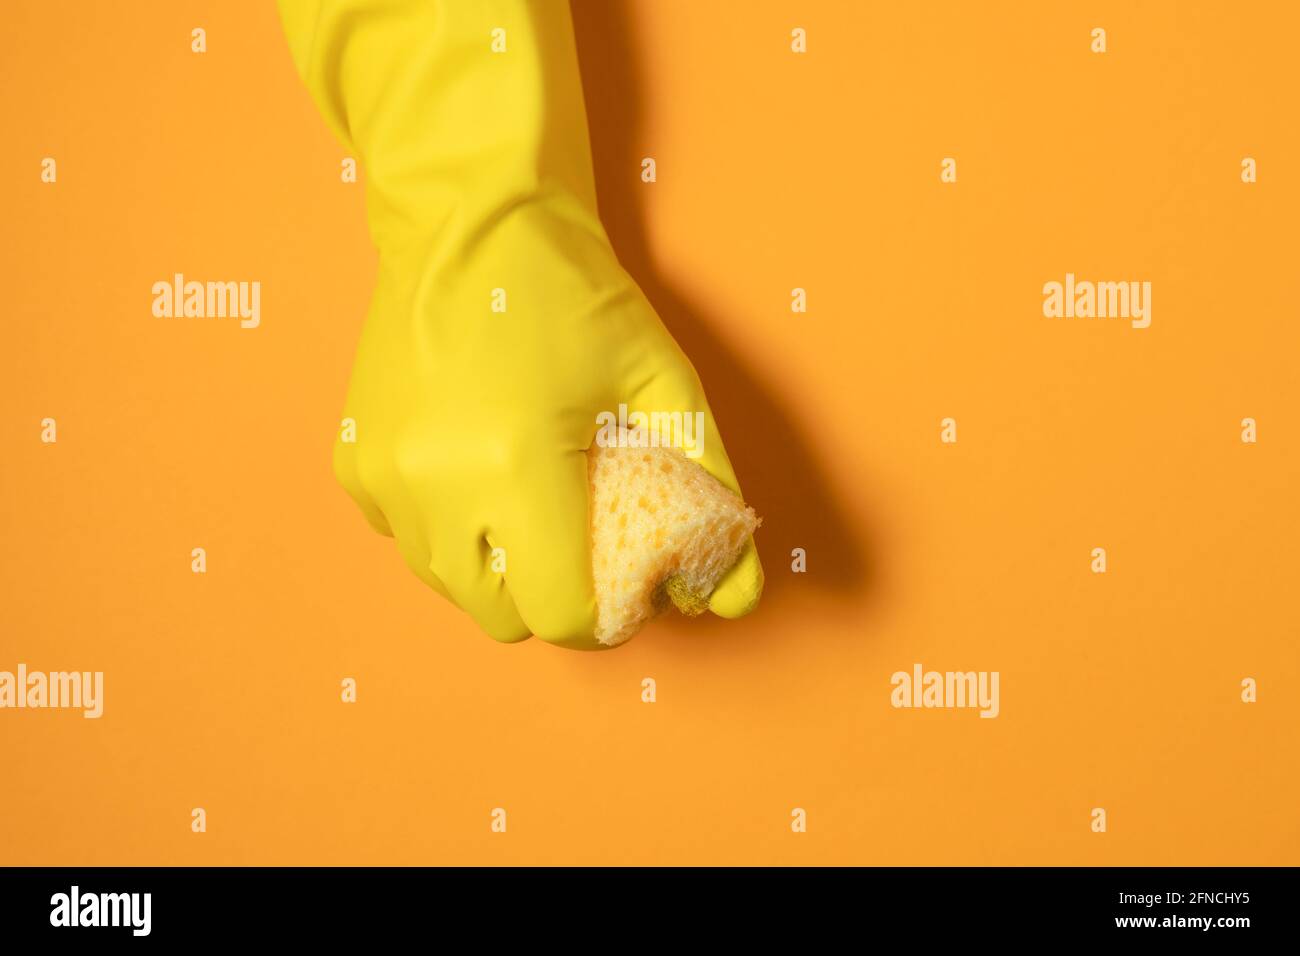 una mano en un guante de goma sostiene una esponja de limpieza. fotografía monocroma en colores amarillos. Foto de stock